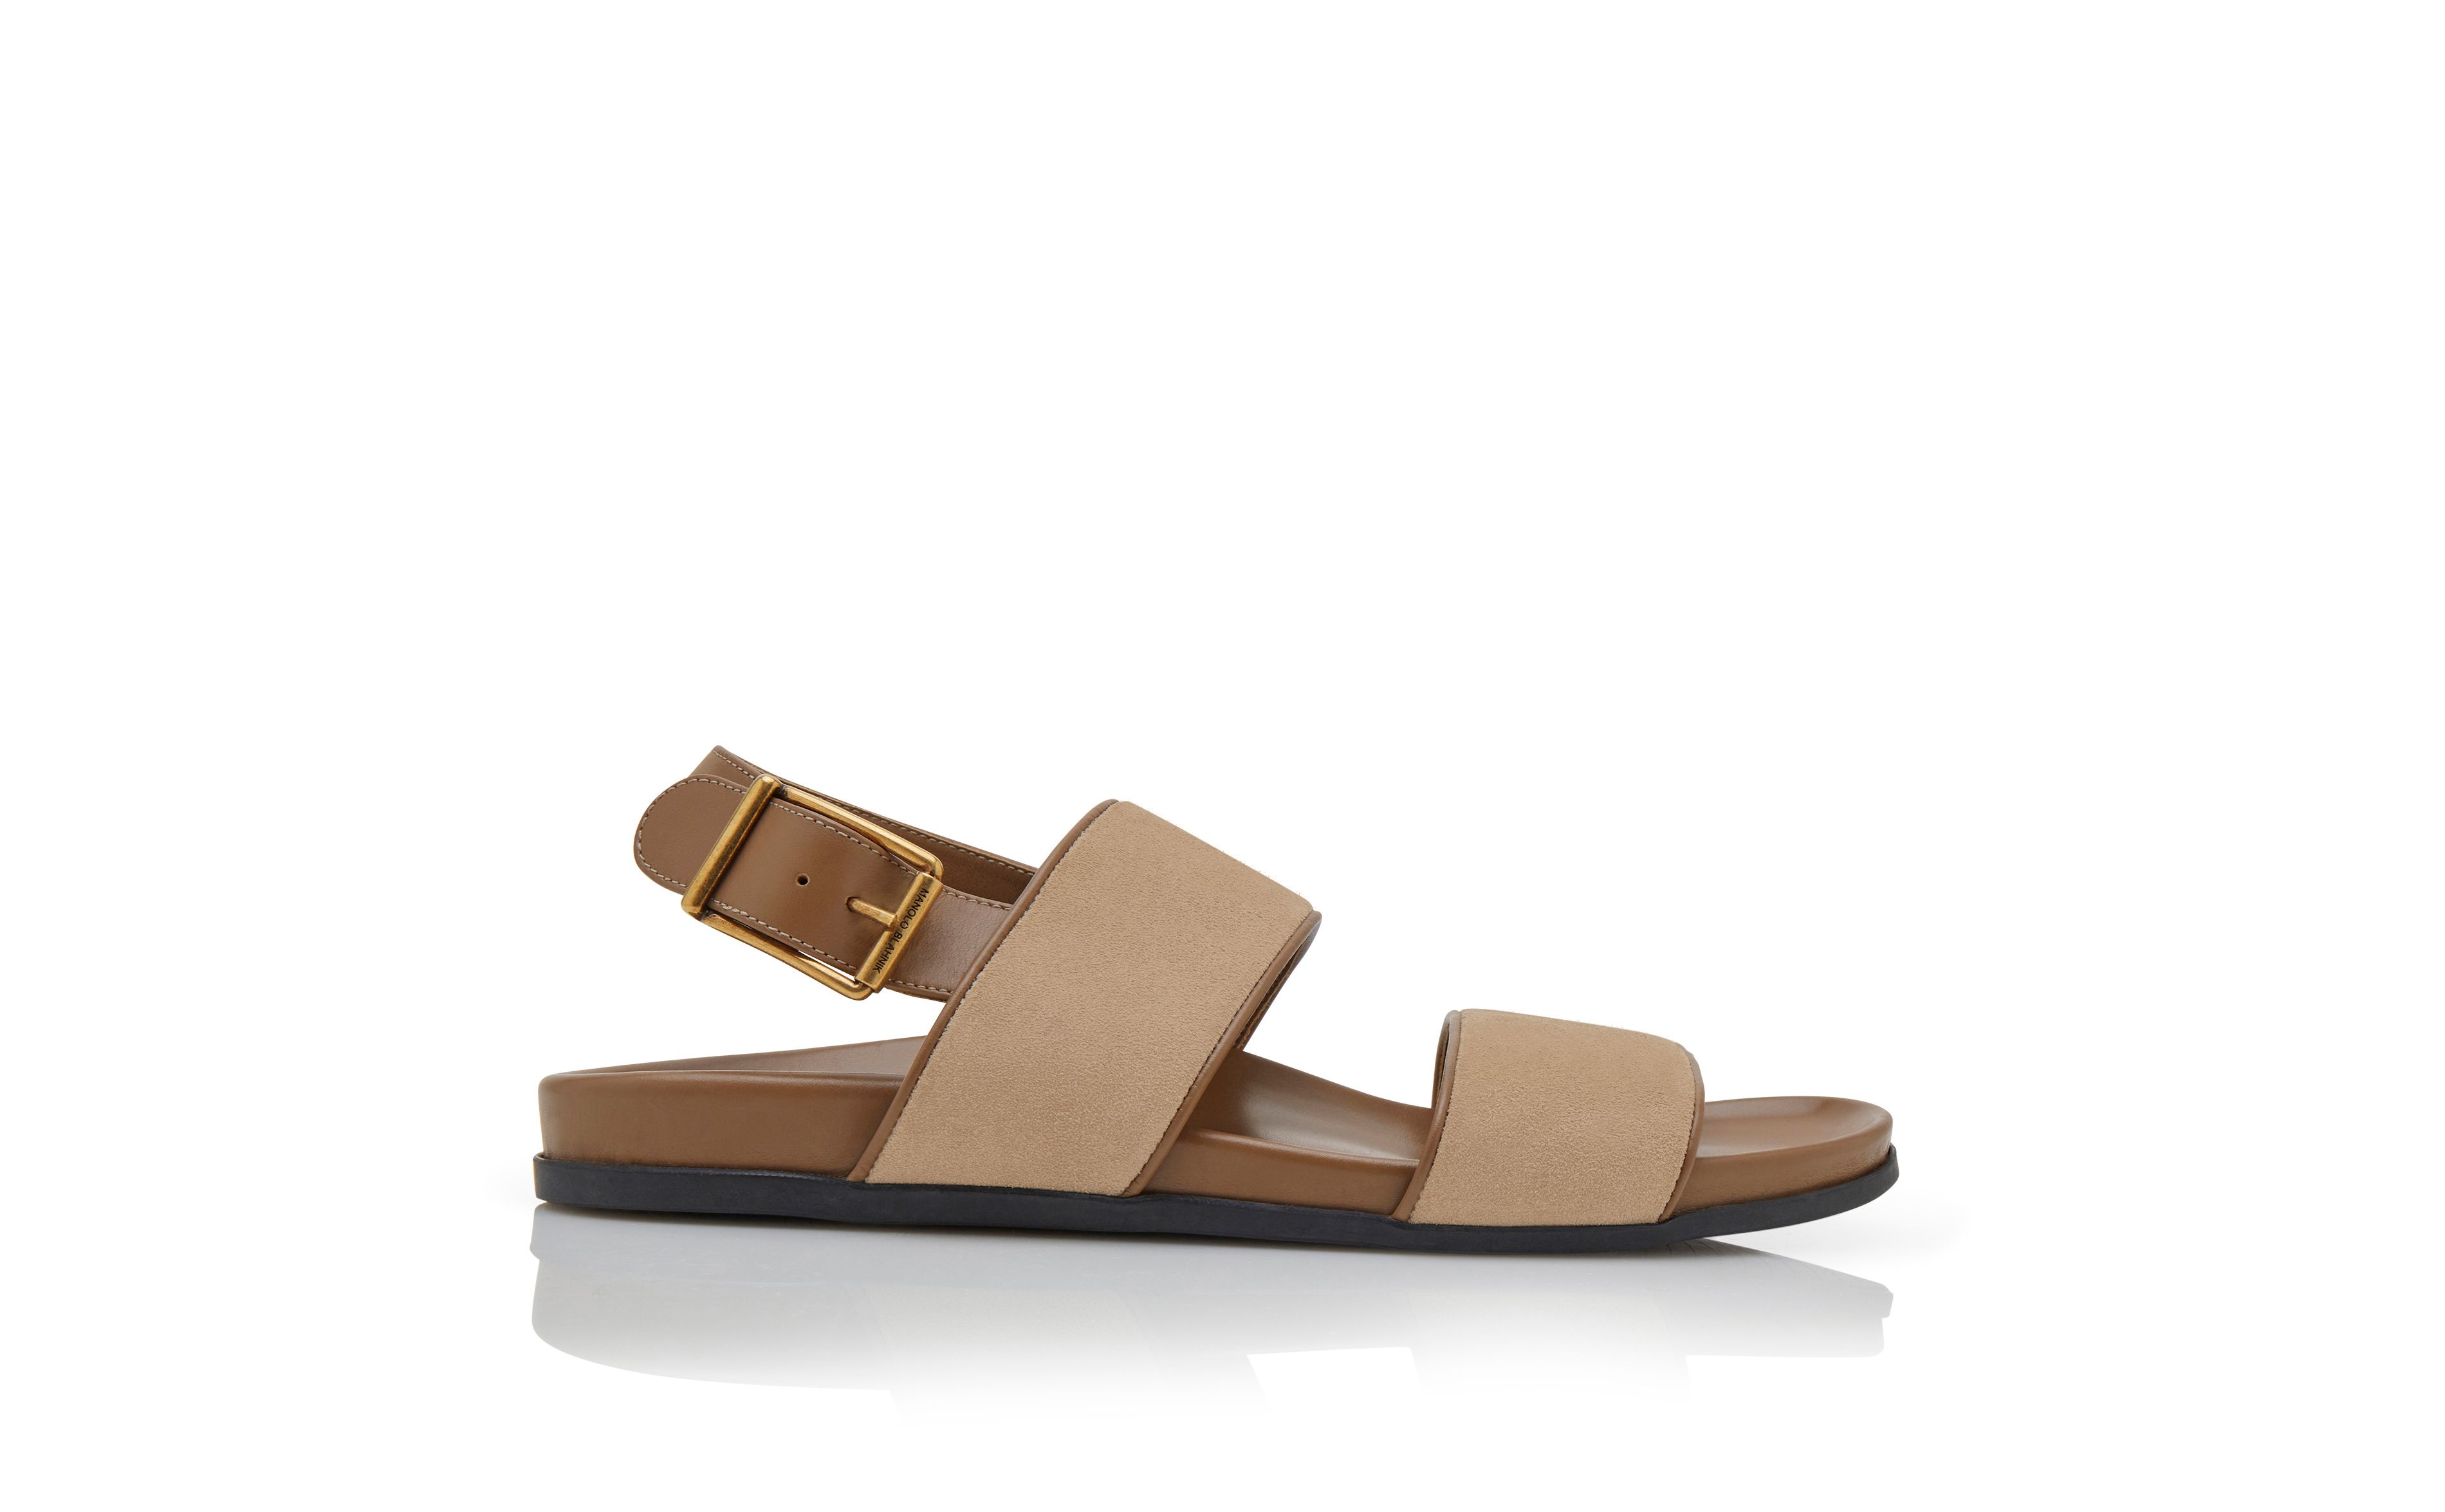 Designer Light Brown Suede Sandals - Image Side View